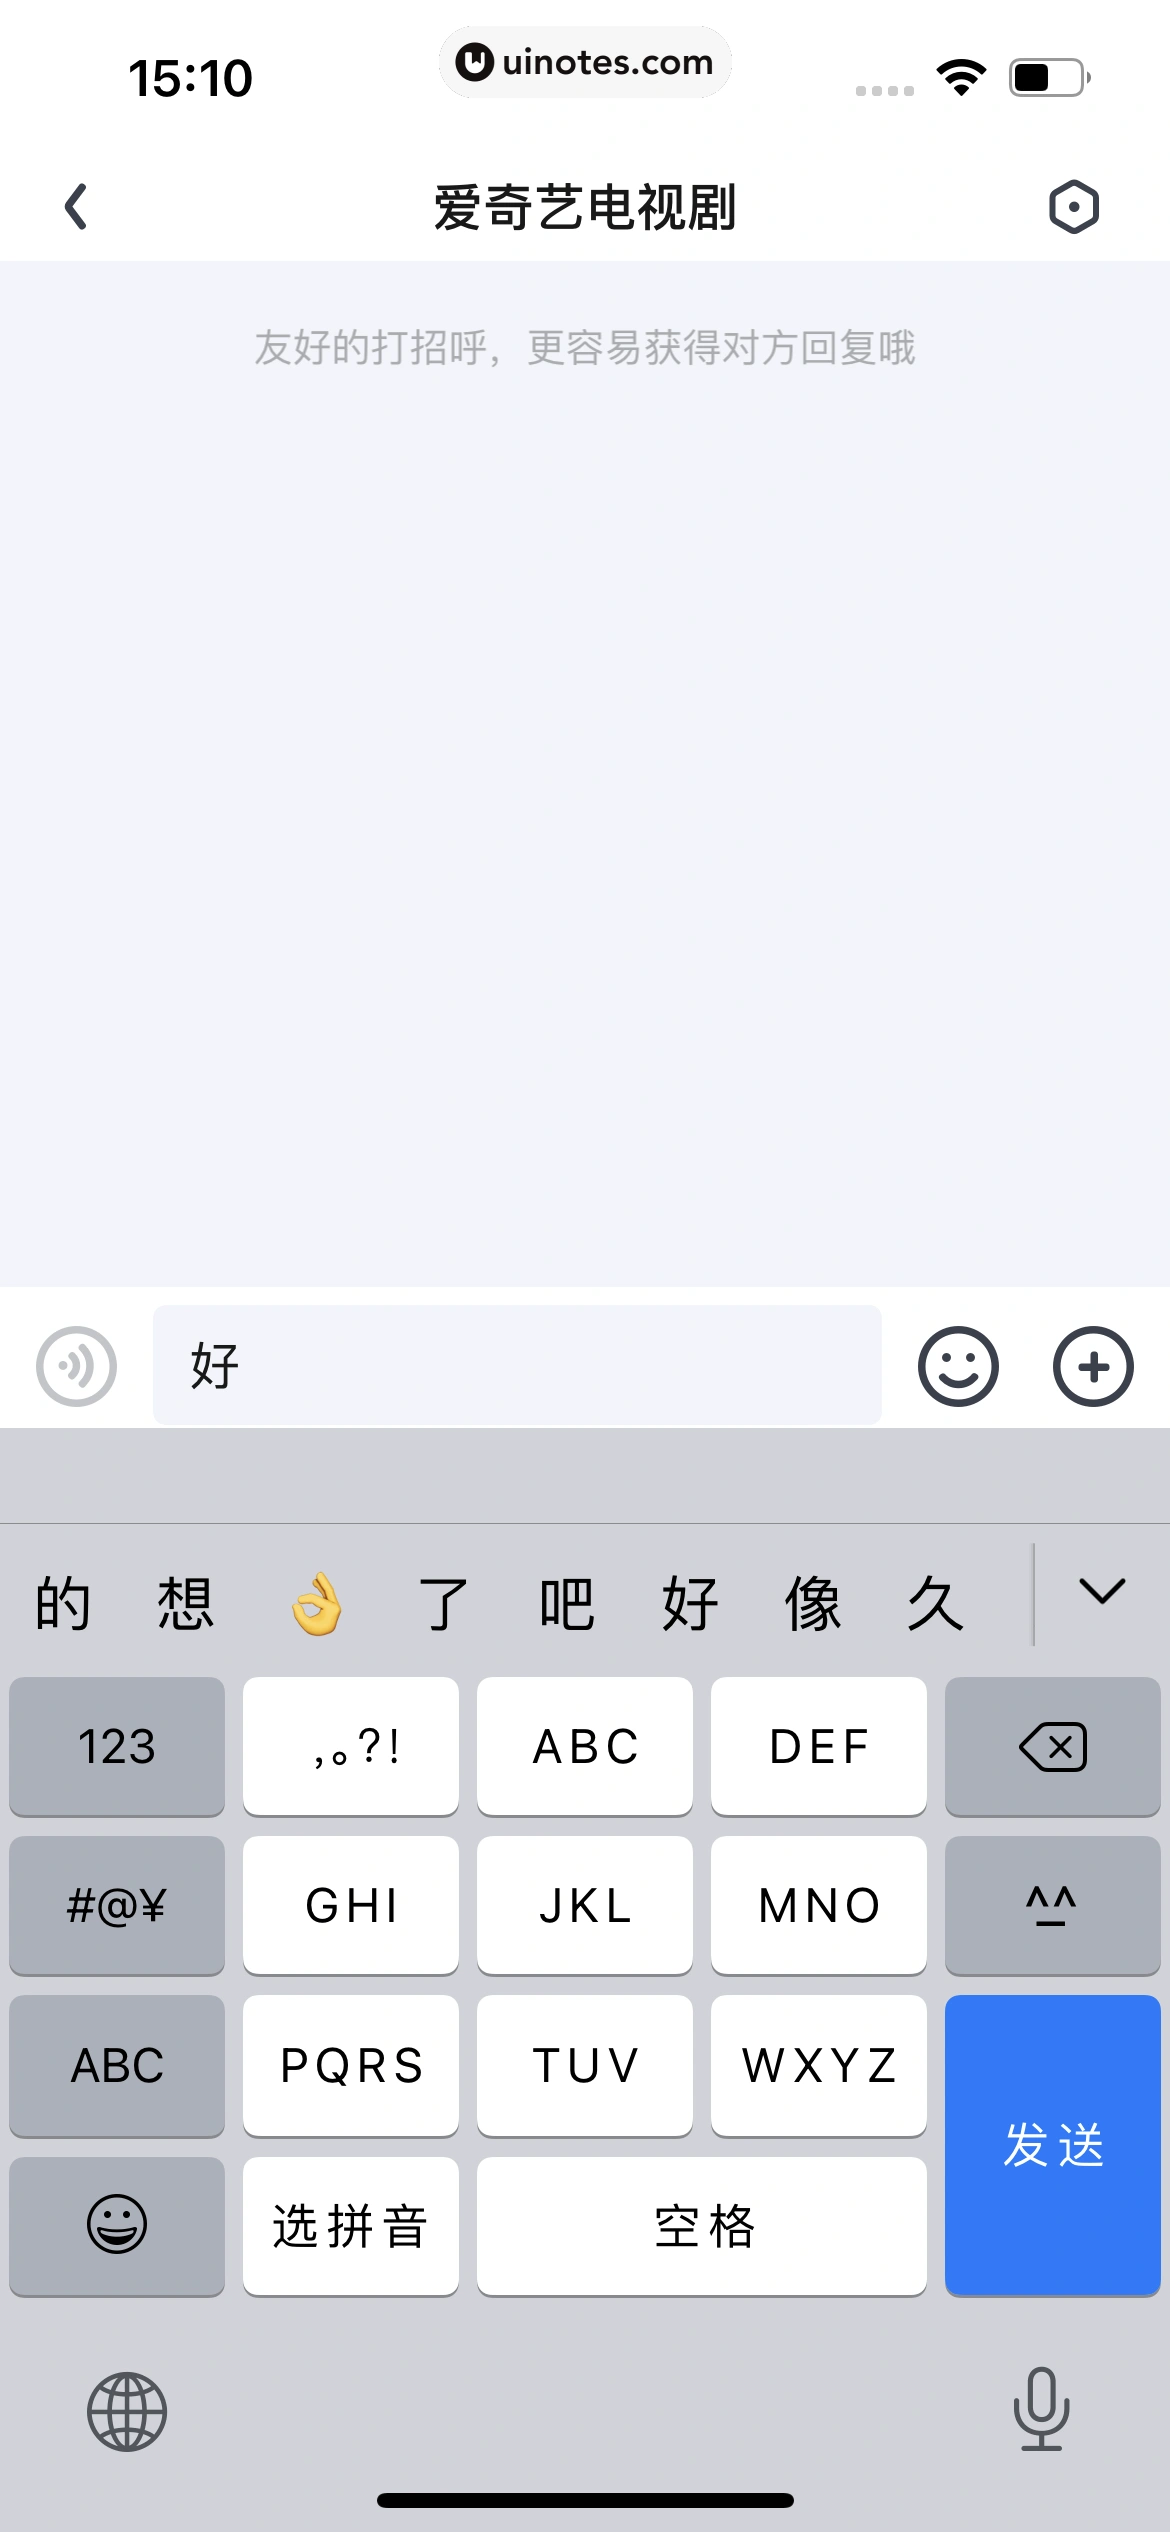 爱奇艺 App 截图 066 - UI Notes